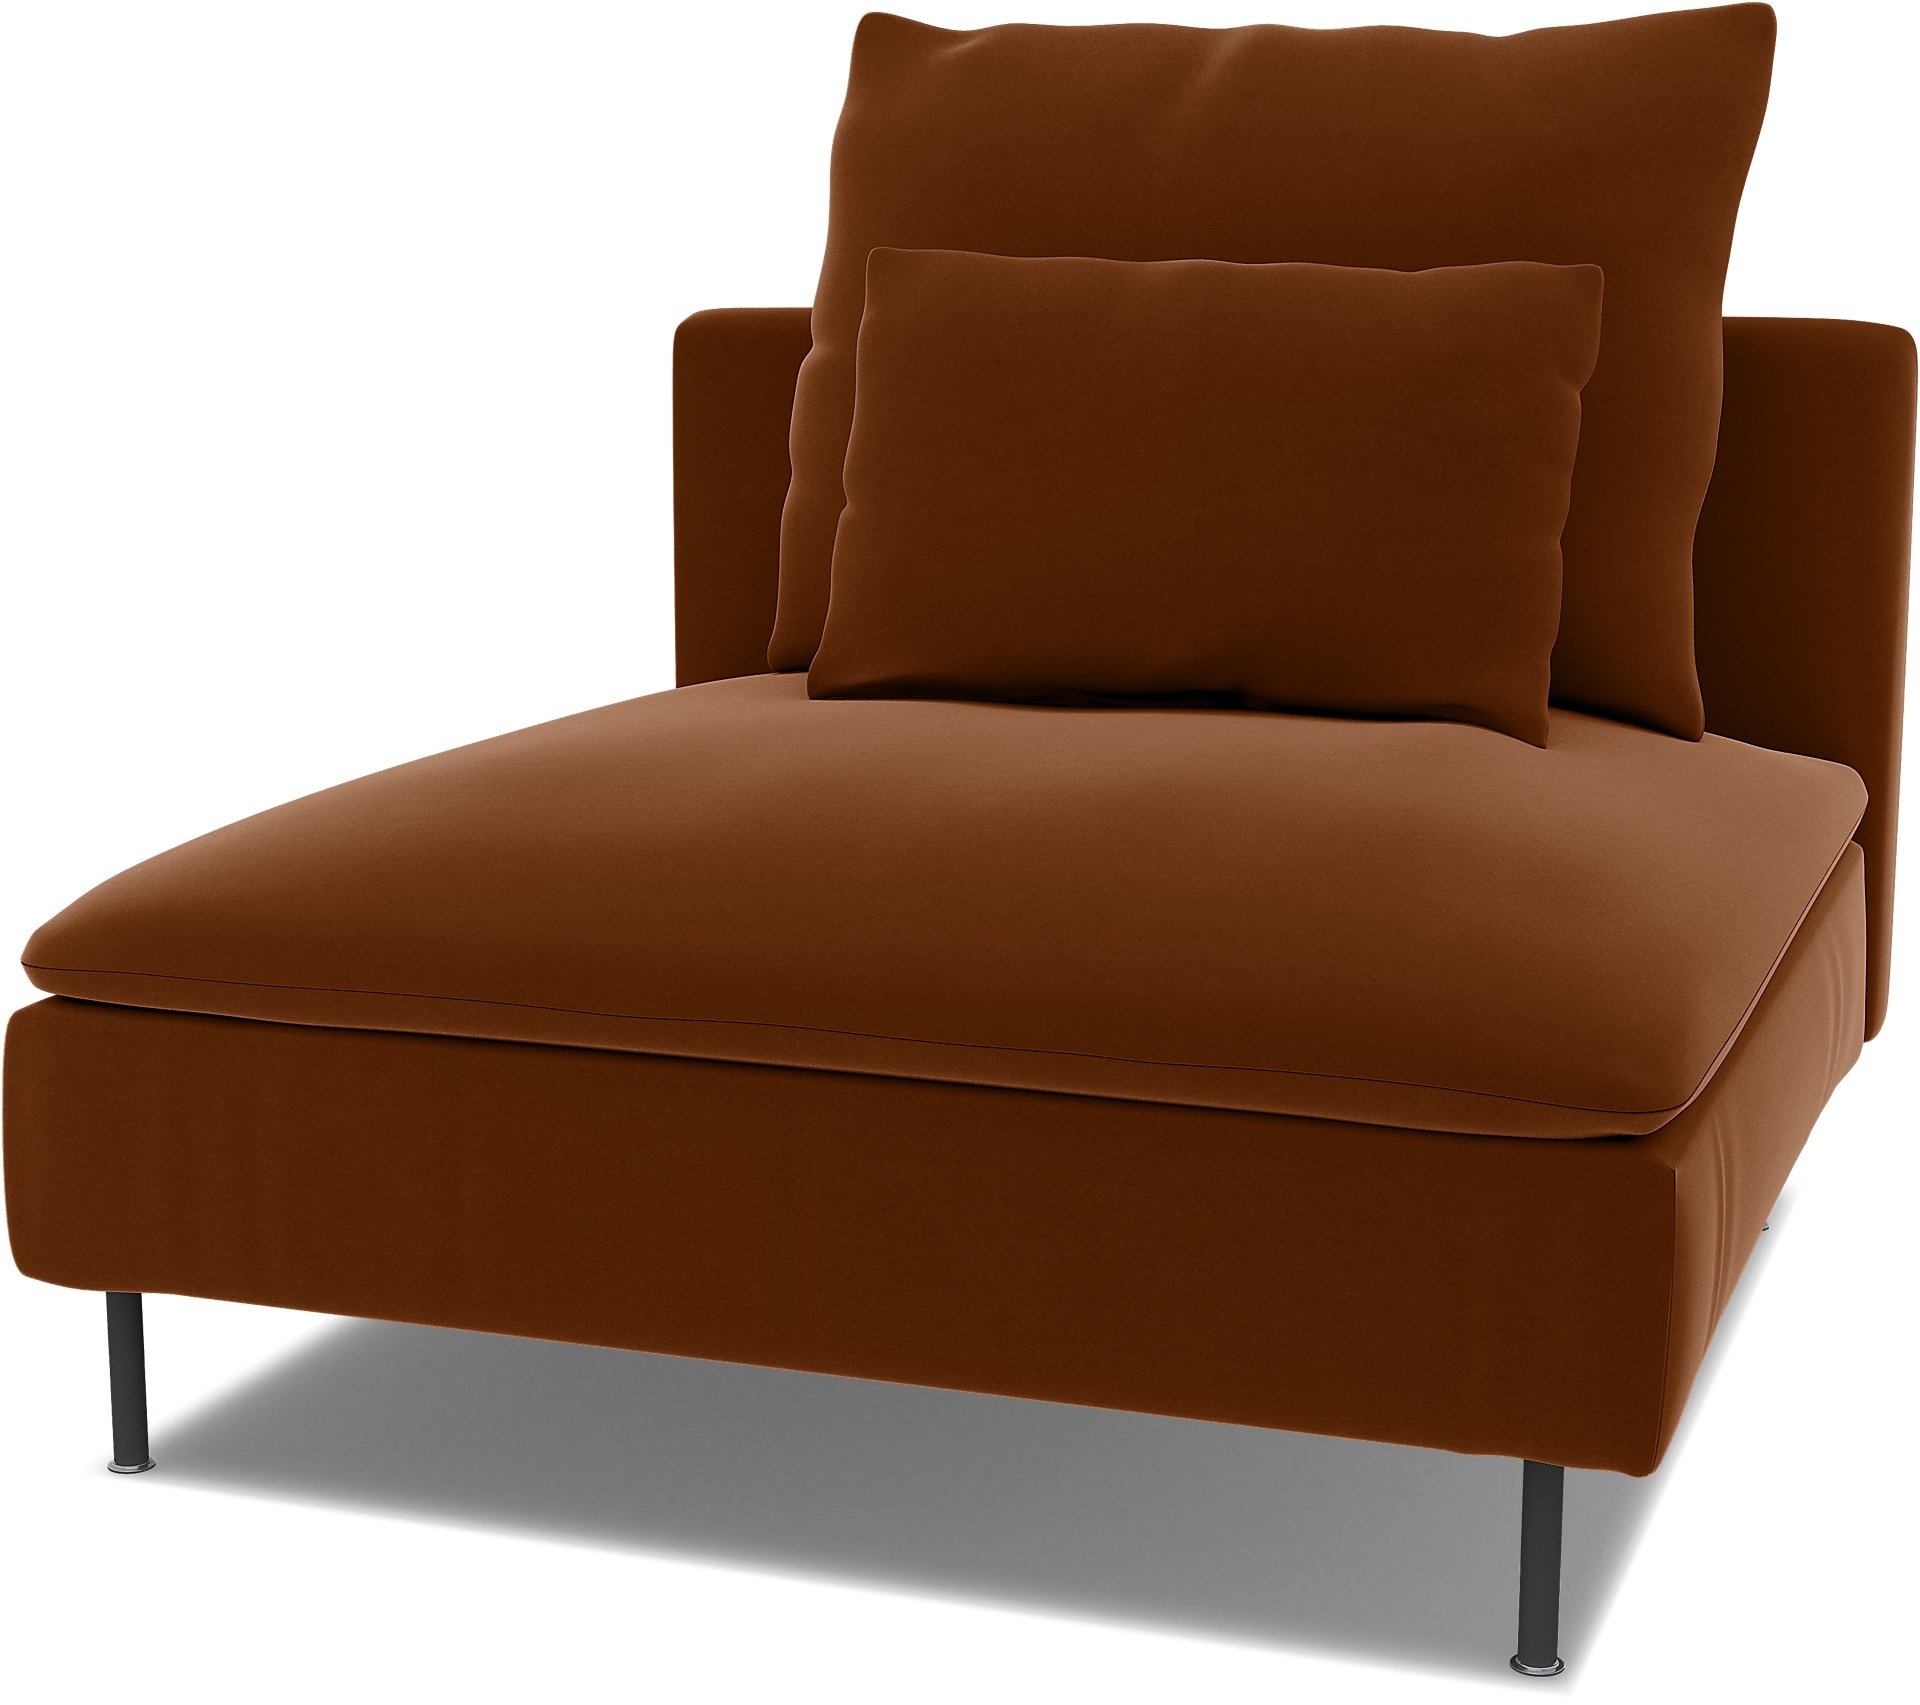 Spare seat cushion cover for SODERHAMN 1 SEAT SECTION , Cinnamon, Velvet - Bemz